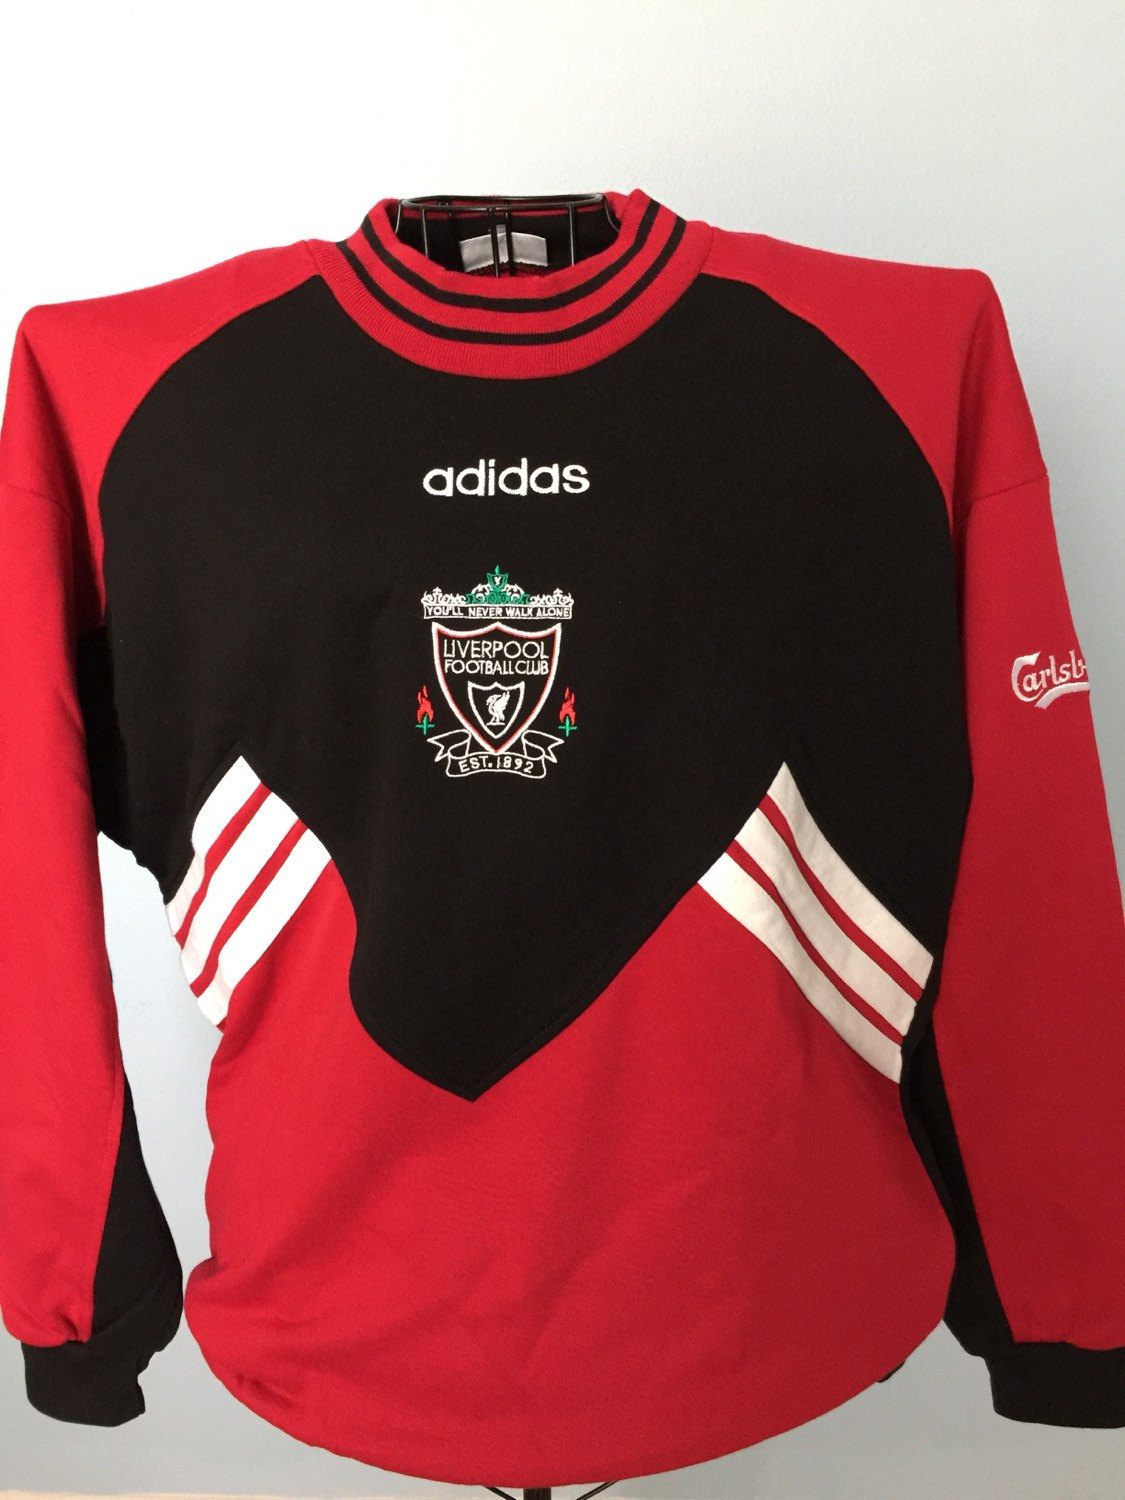 Vintage Adidas Liverpool F.C. Carlsberg Pullover Sweatshirt - Etsy